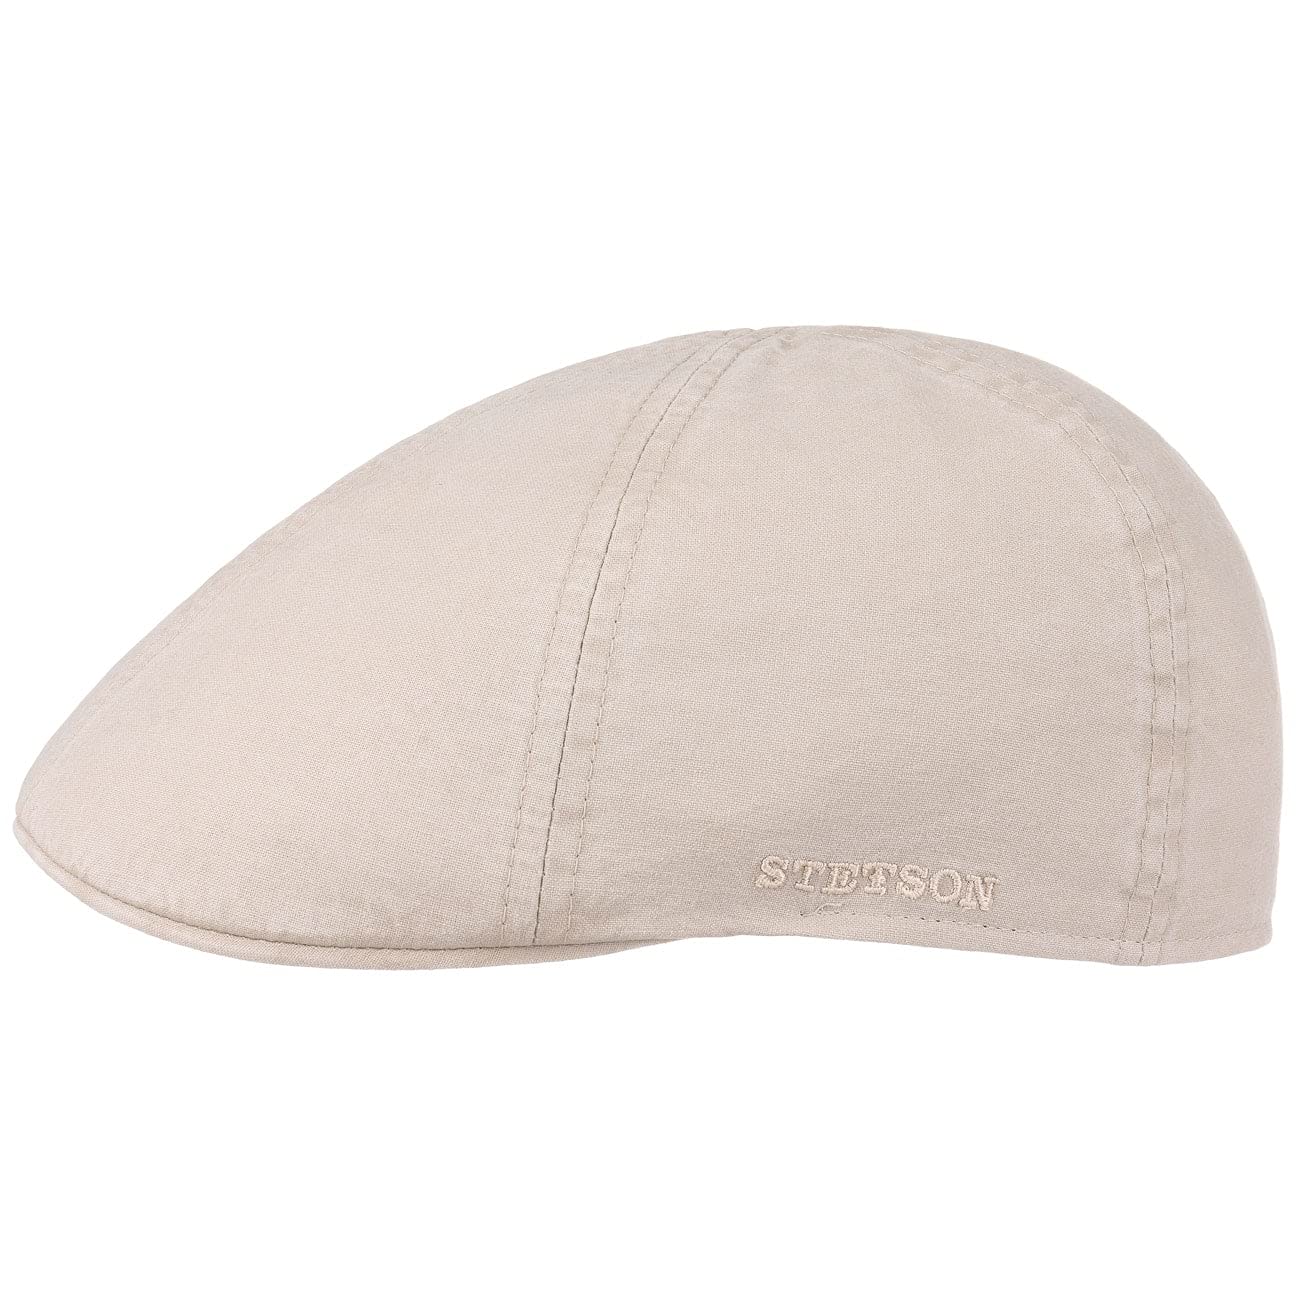 Stetson Texas Organic Cotton Flatcap Herren - Nachhaltige Schiebermütze mit Bio-Baumwolle - Flat Cap mit UV-Schutz (40+) - Herrencap Frühjahr/Sommer - Schirmmütze Natur S (54-55 cm)